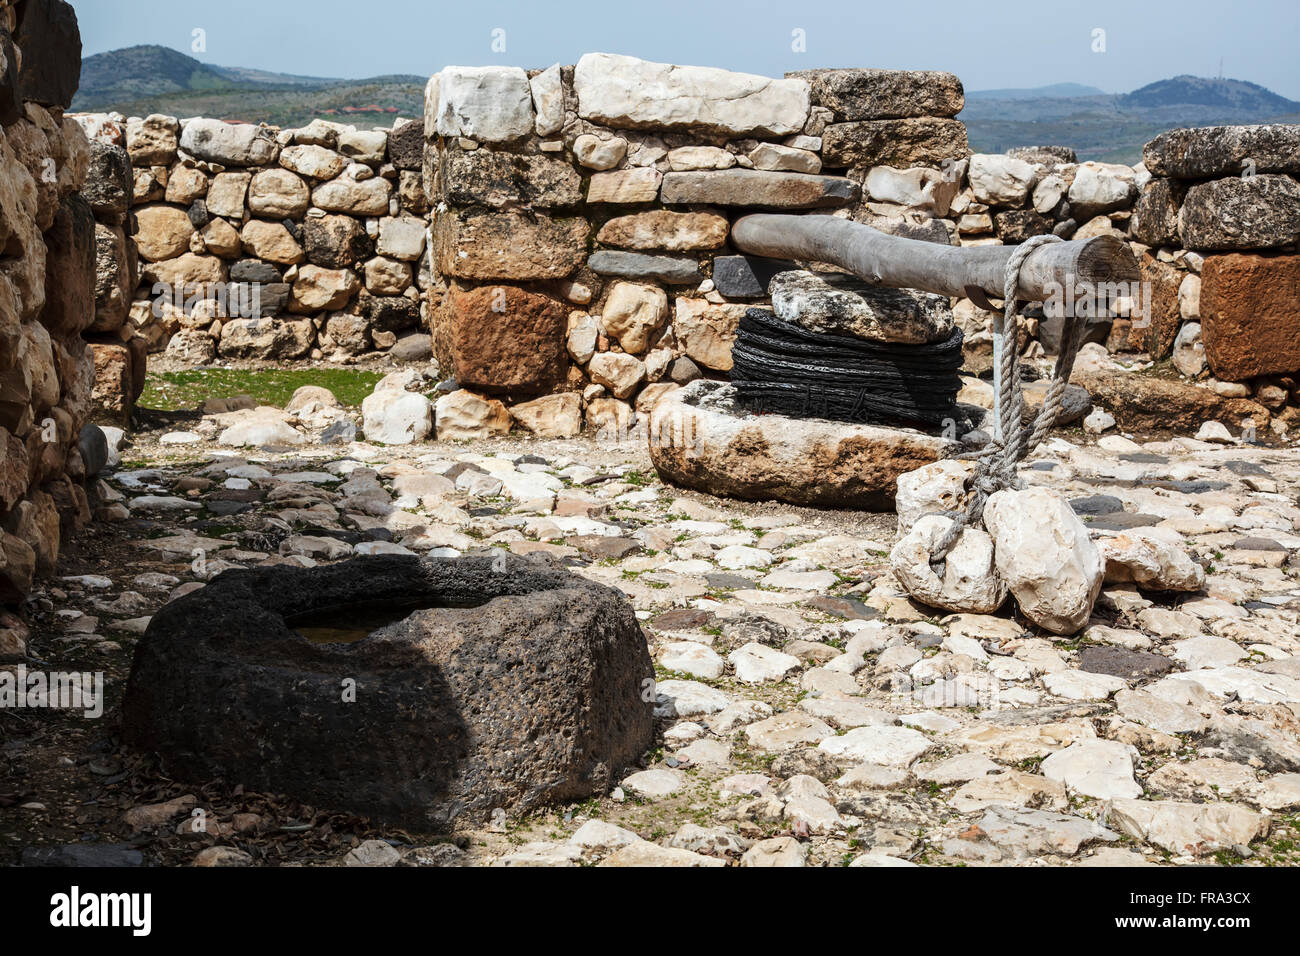 Presse d'olive et bassin en pierre sur le site des ruines antiques ; Tel Hazor, Israël Banque D'Images